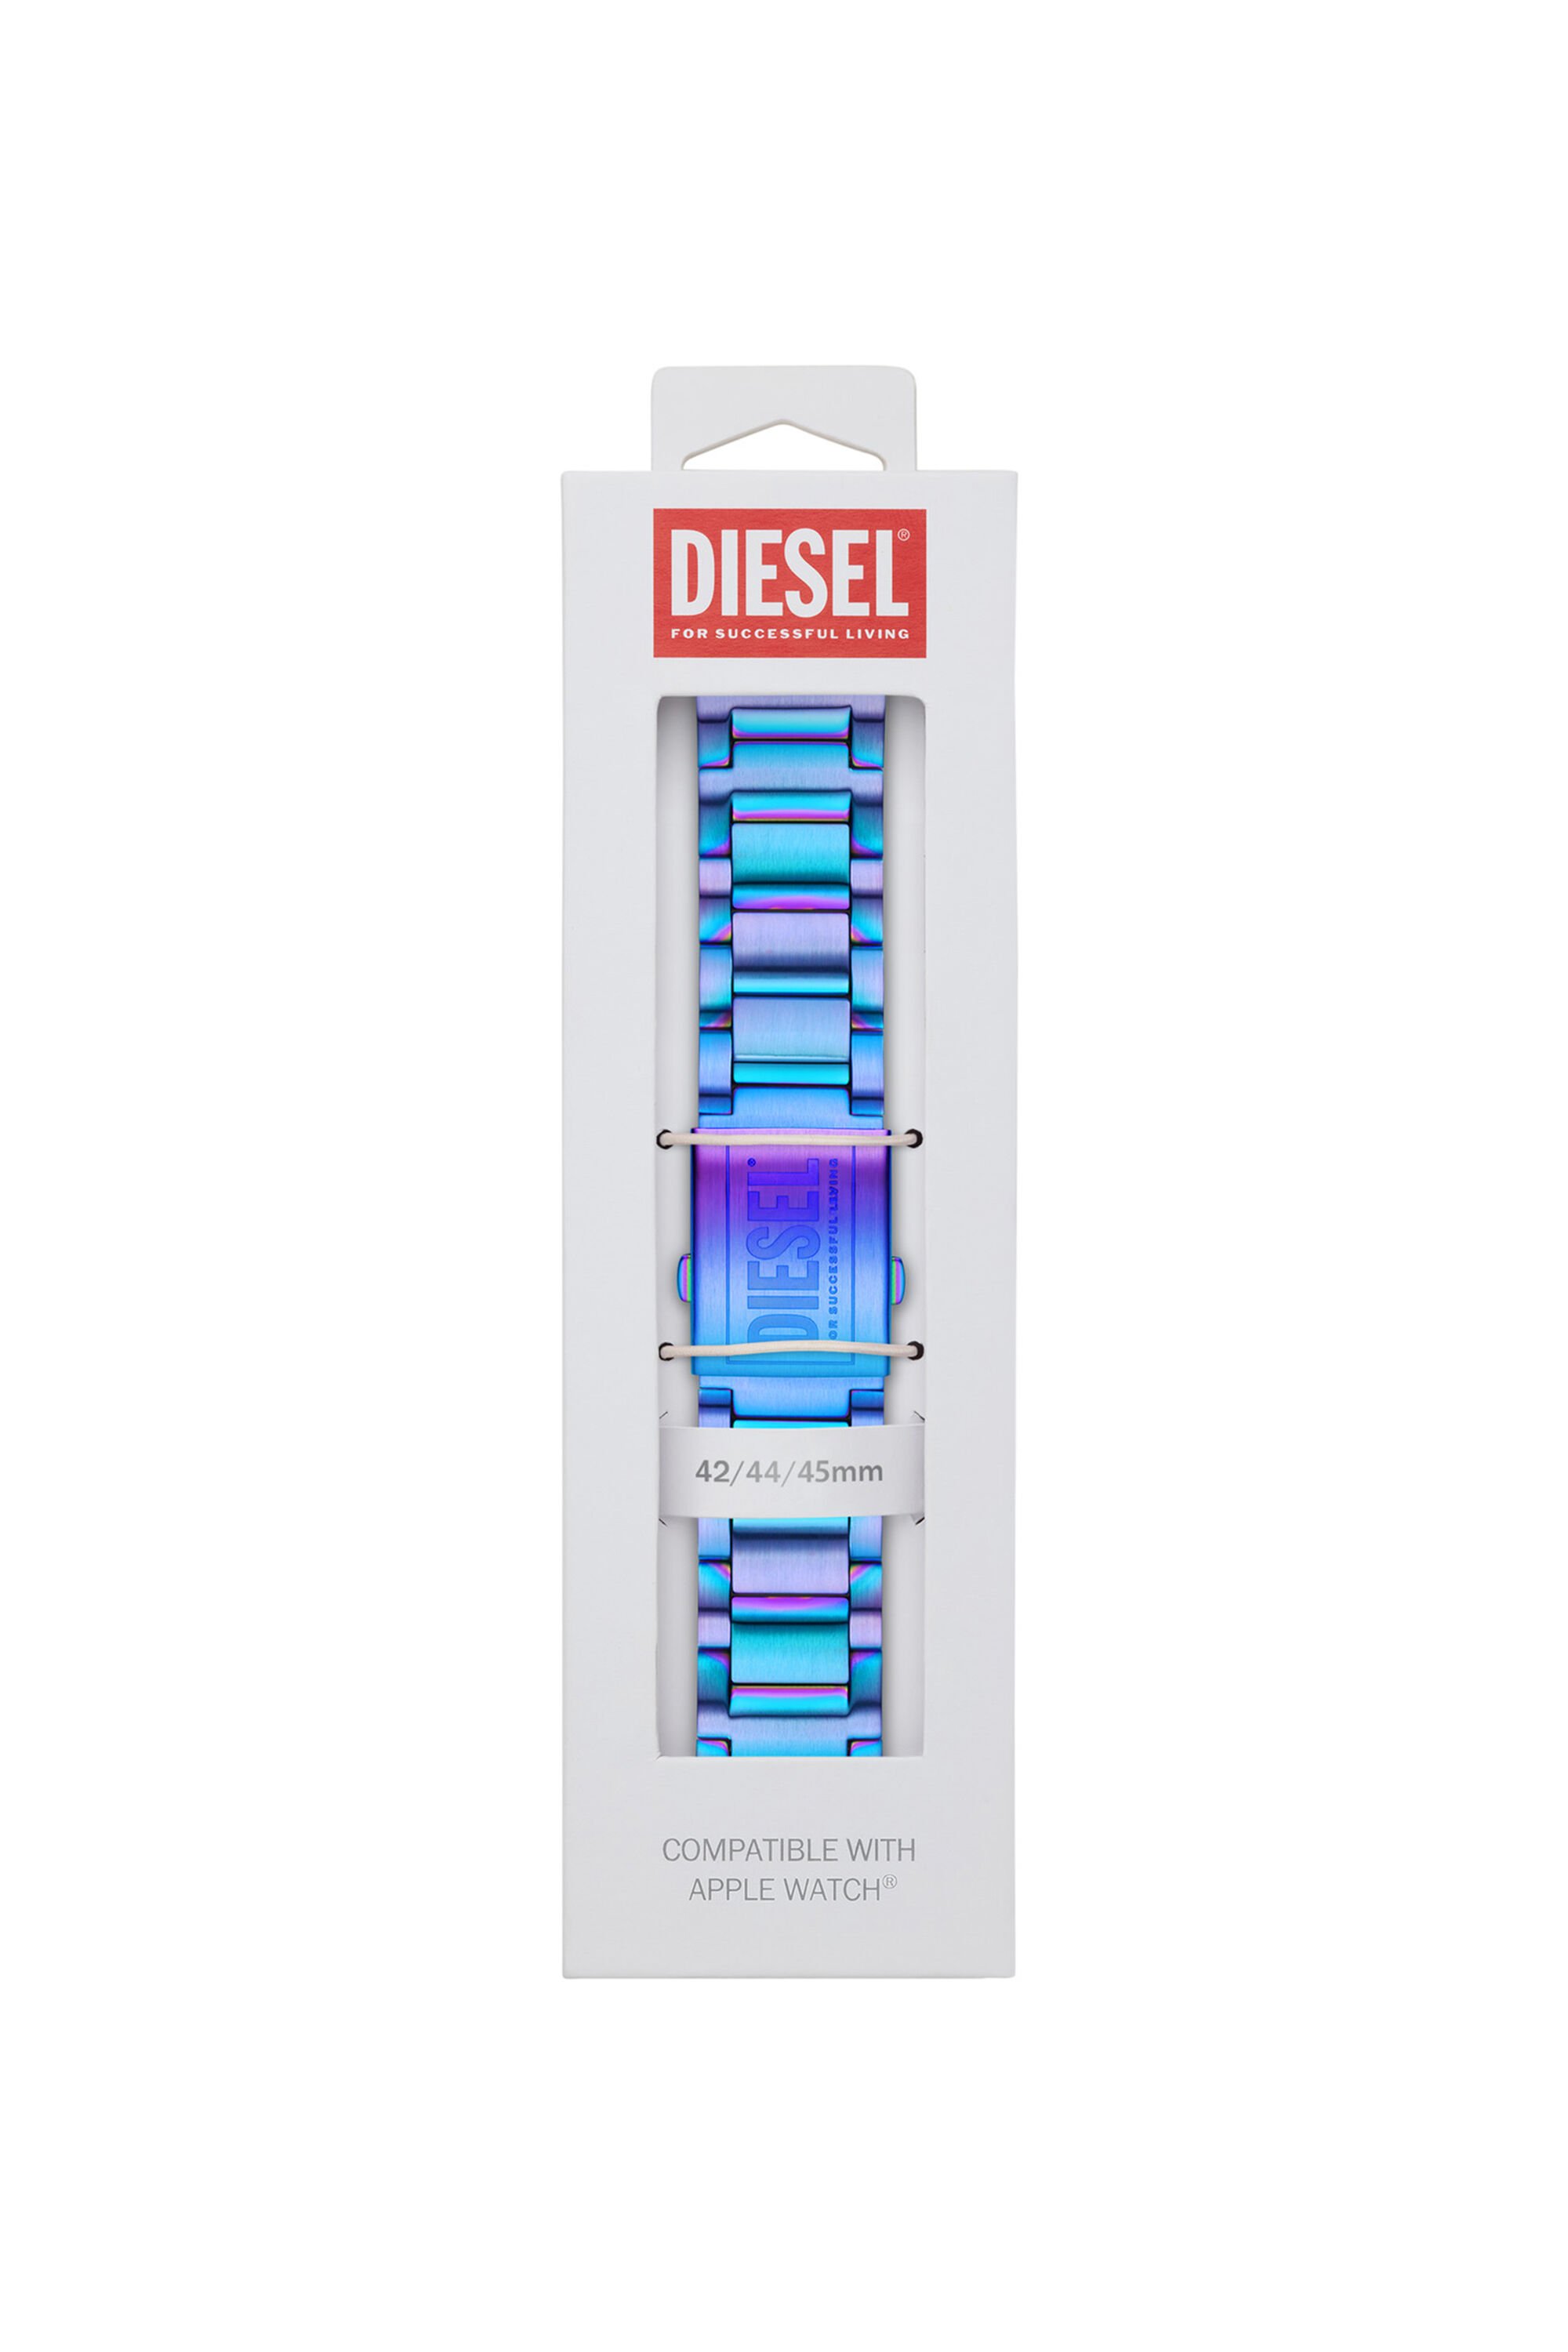 Diesel - DSS007, Blau - Image 2